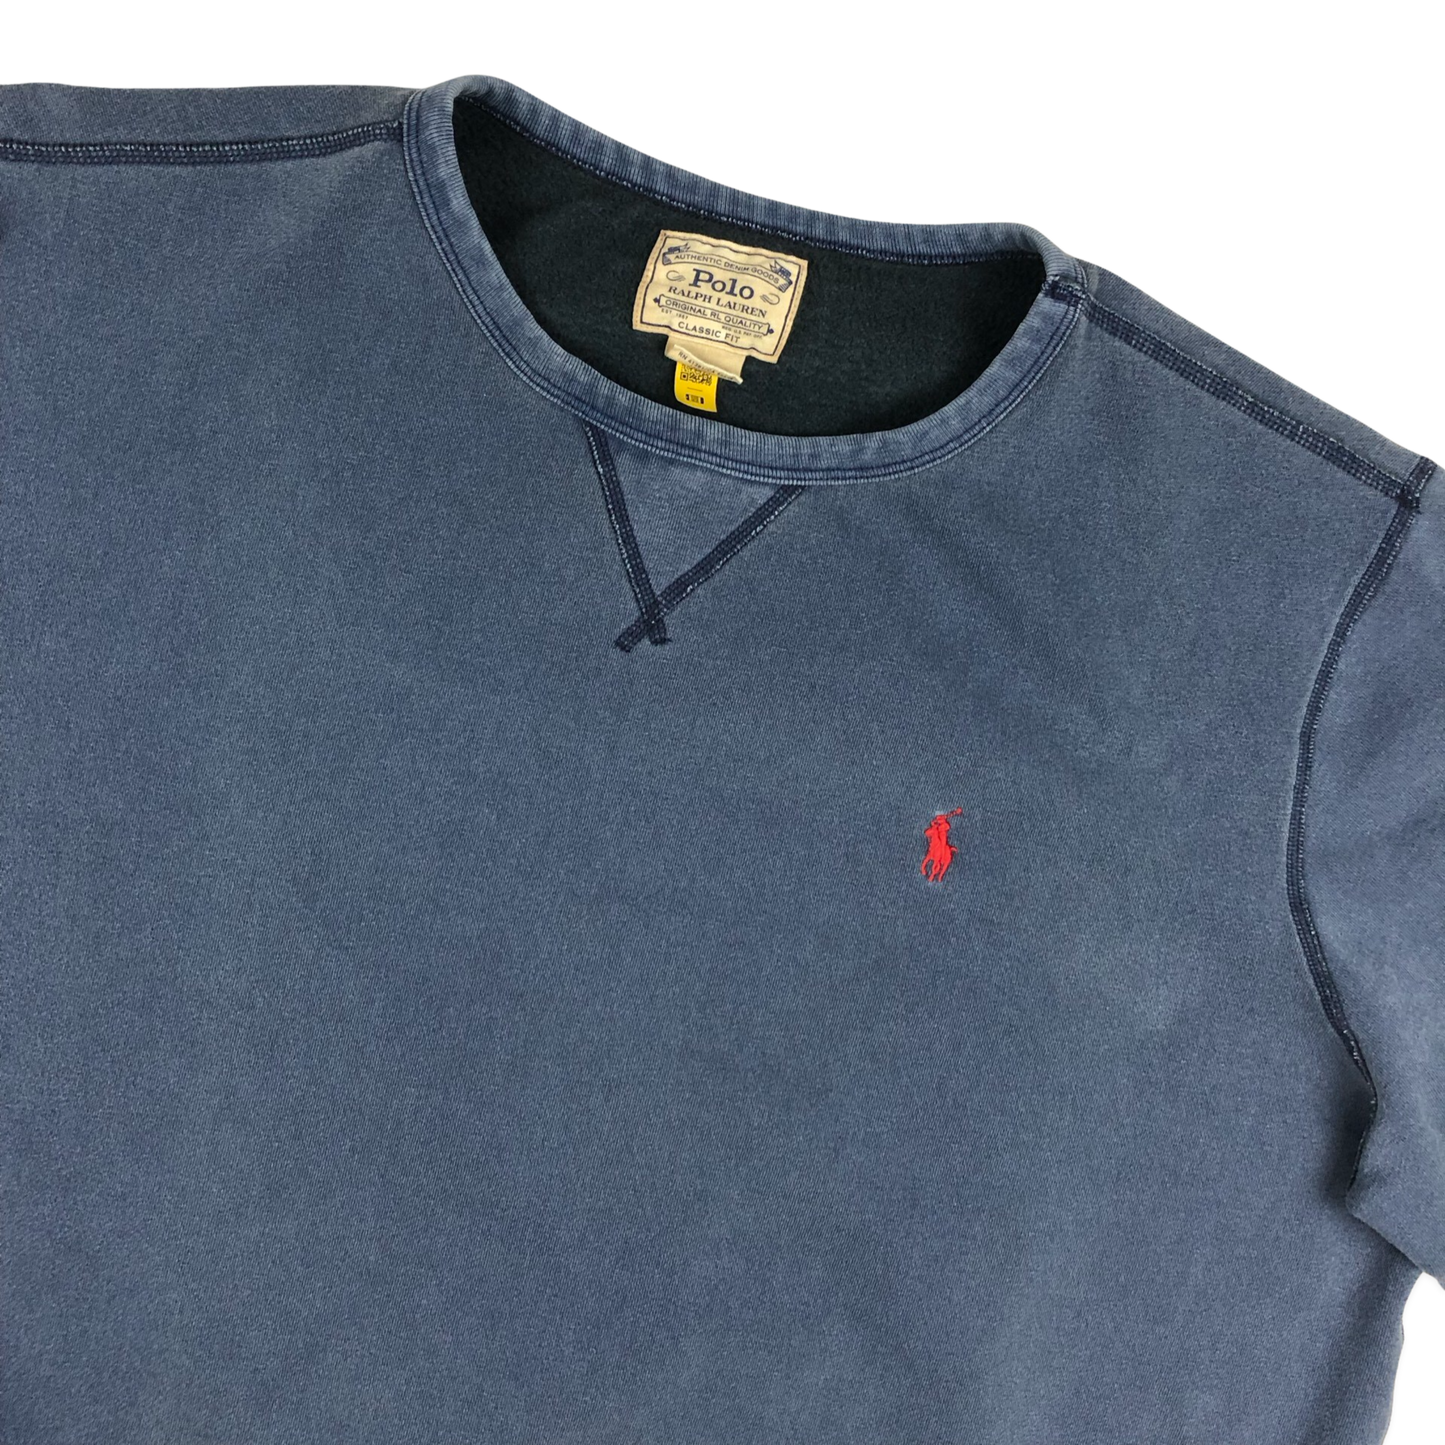 Vintage Ralph Lauren Navy Sweatshirt 3XL